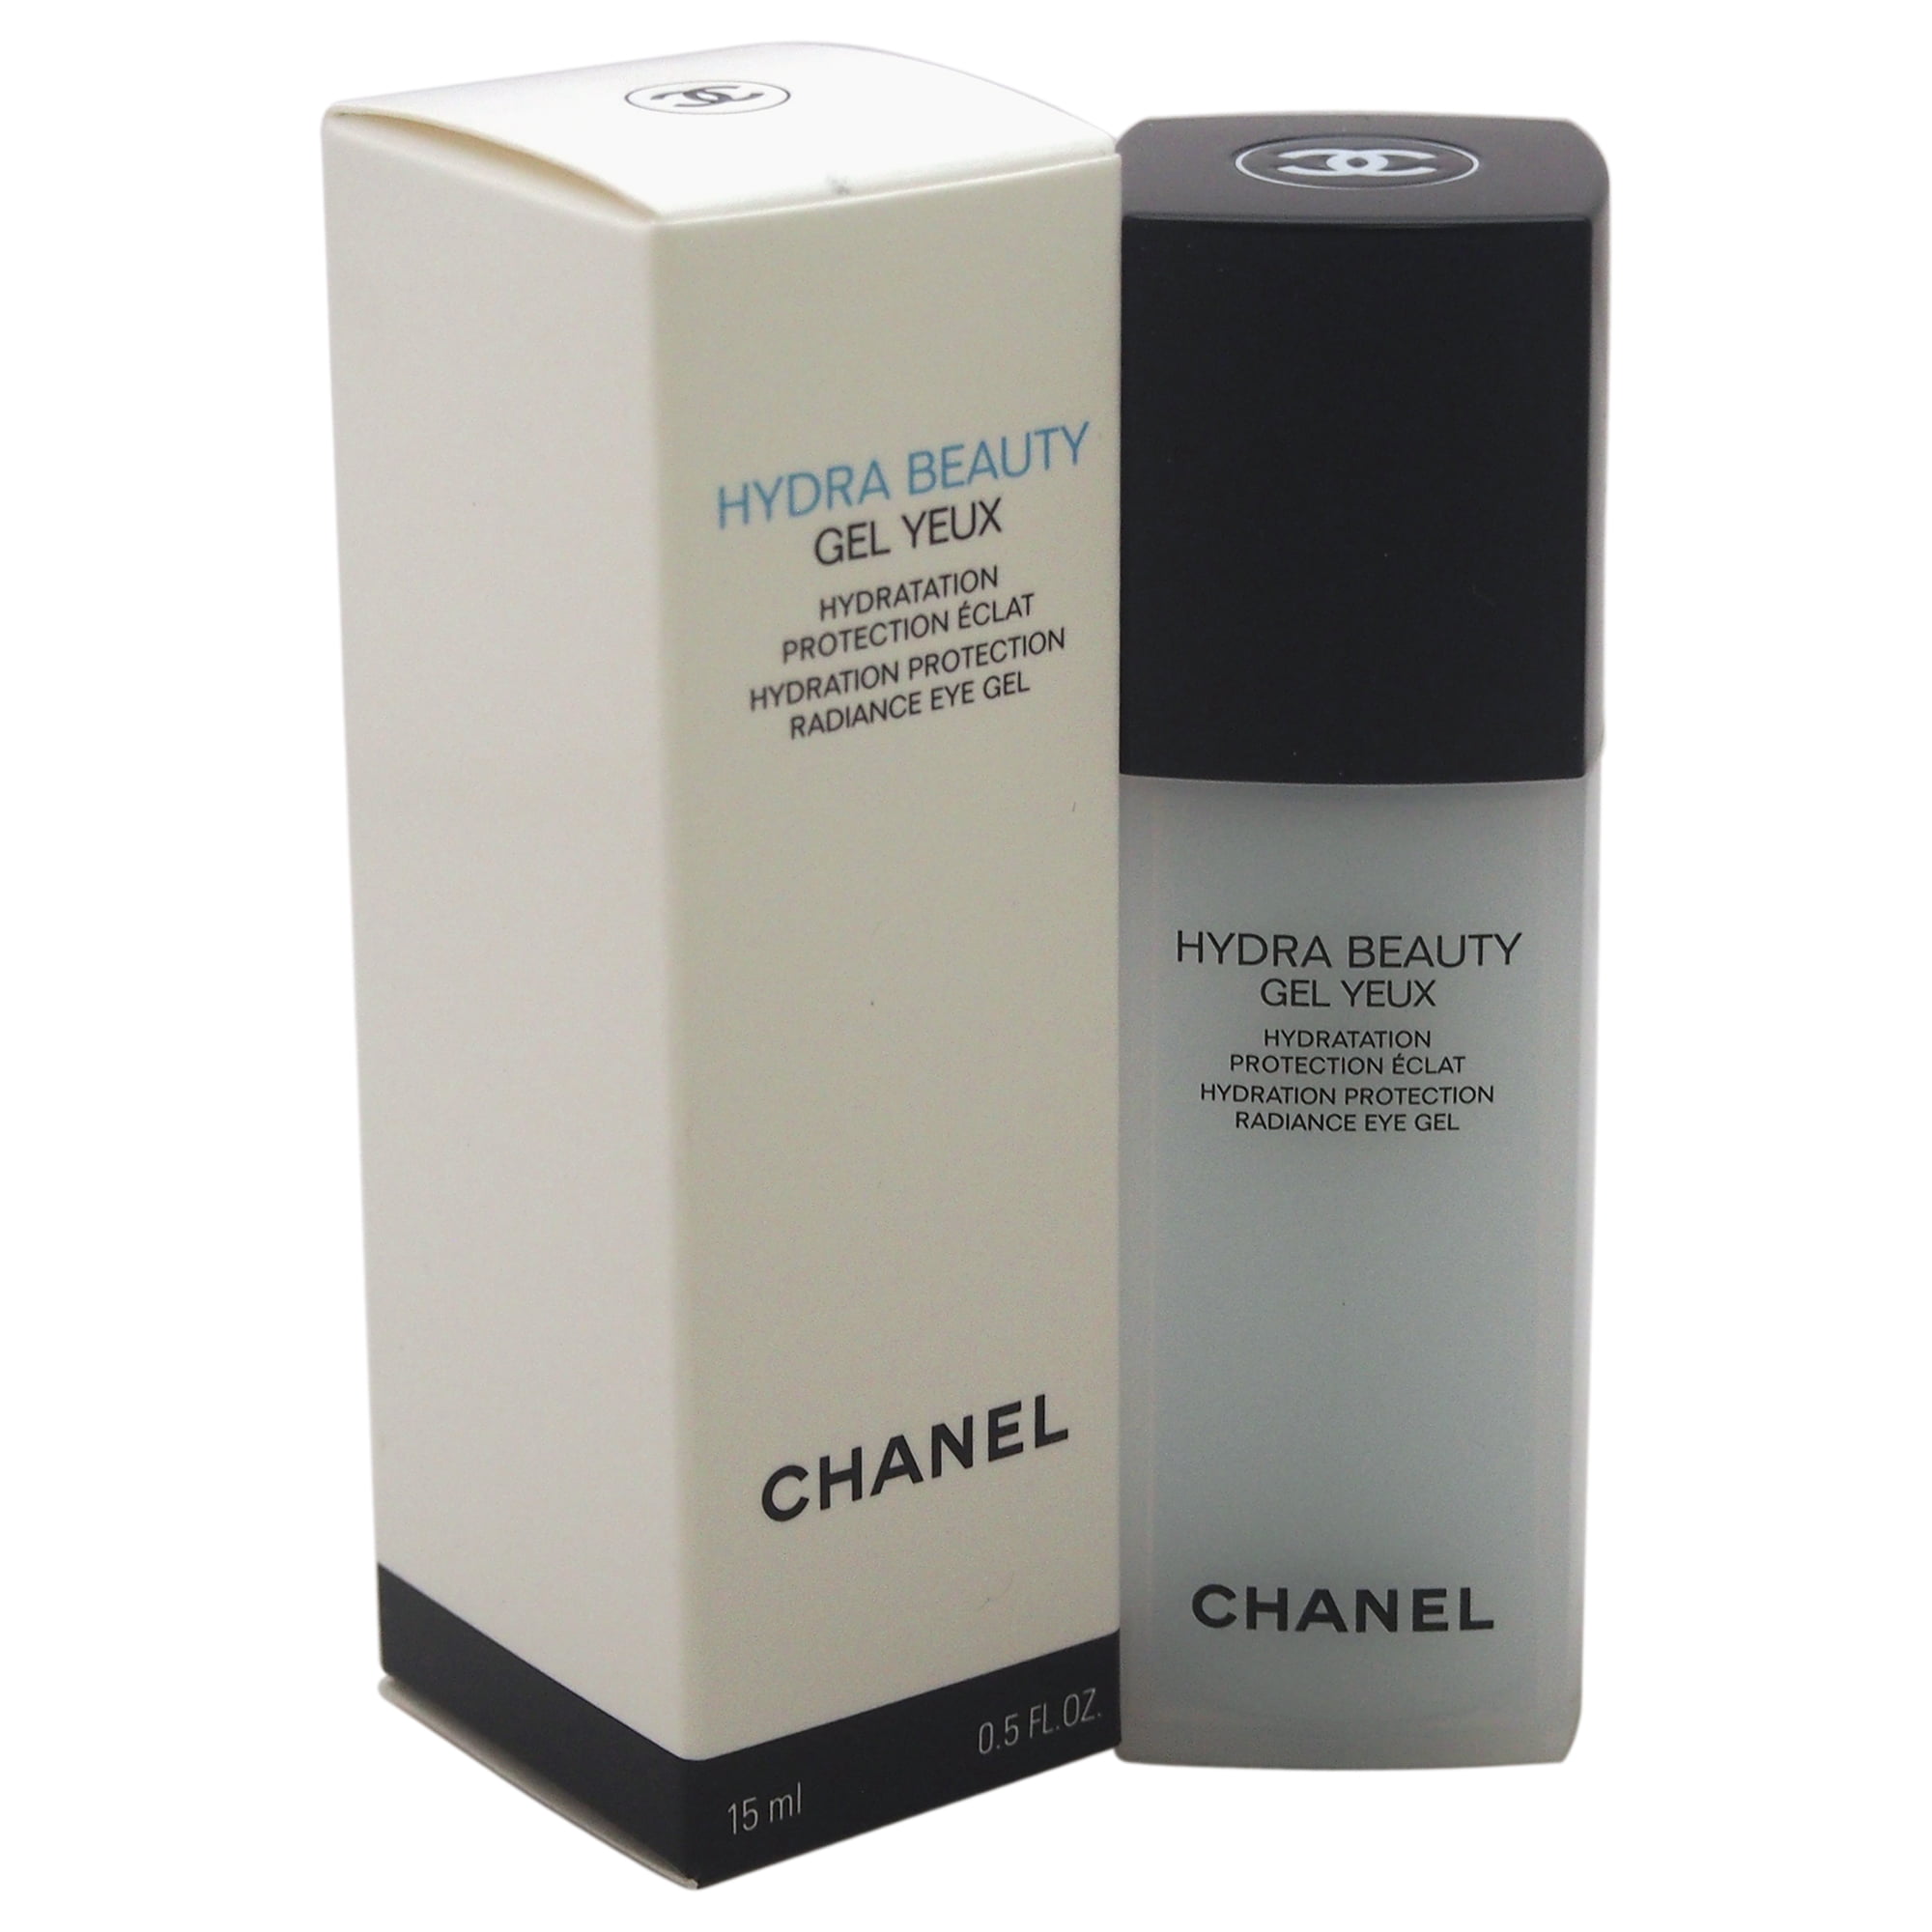 Chanel hydra Beauty Gel Creme. Chanel hydra Beauty Micro Serum. Chanel hydra Beauty Gel yeux. Chanel hydra Beauty Serum. Chanel gel